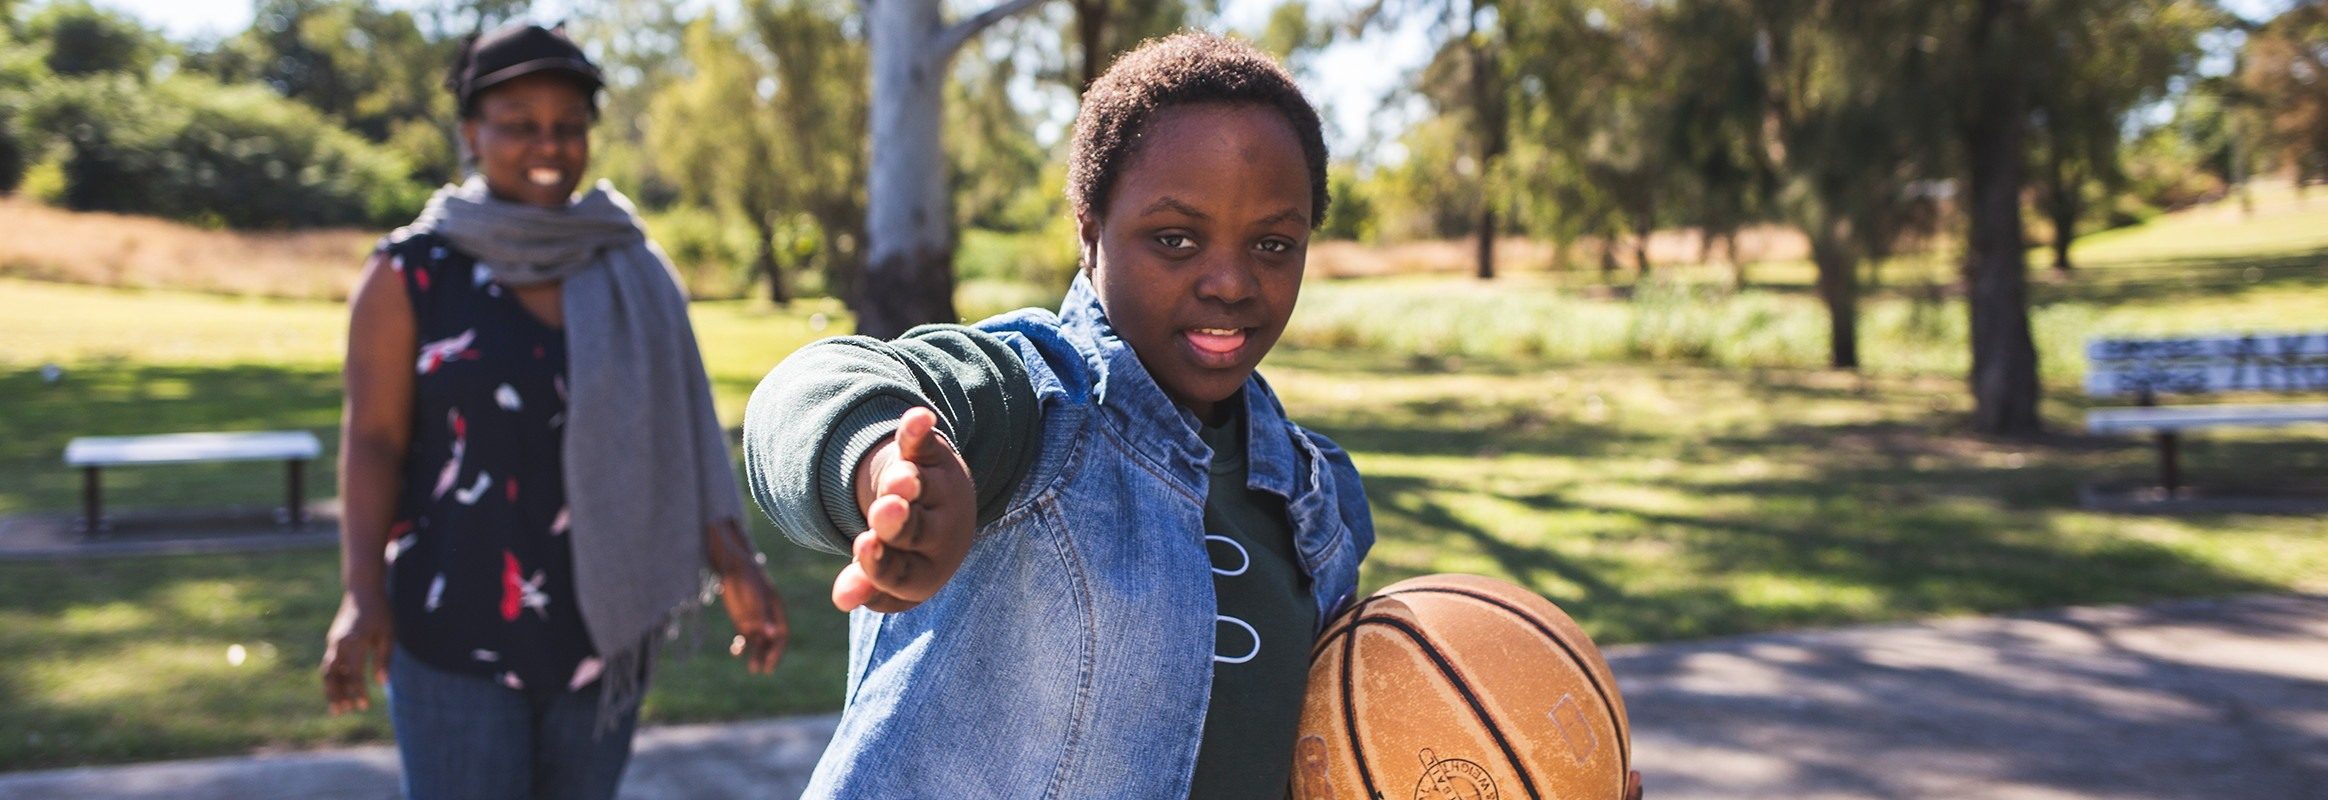 Bonita, una adolescente malauí en la cancha de baloncesto, gesticulando hacia la cámara, con otra mujer negra en la cancha al fondo